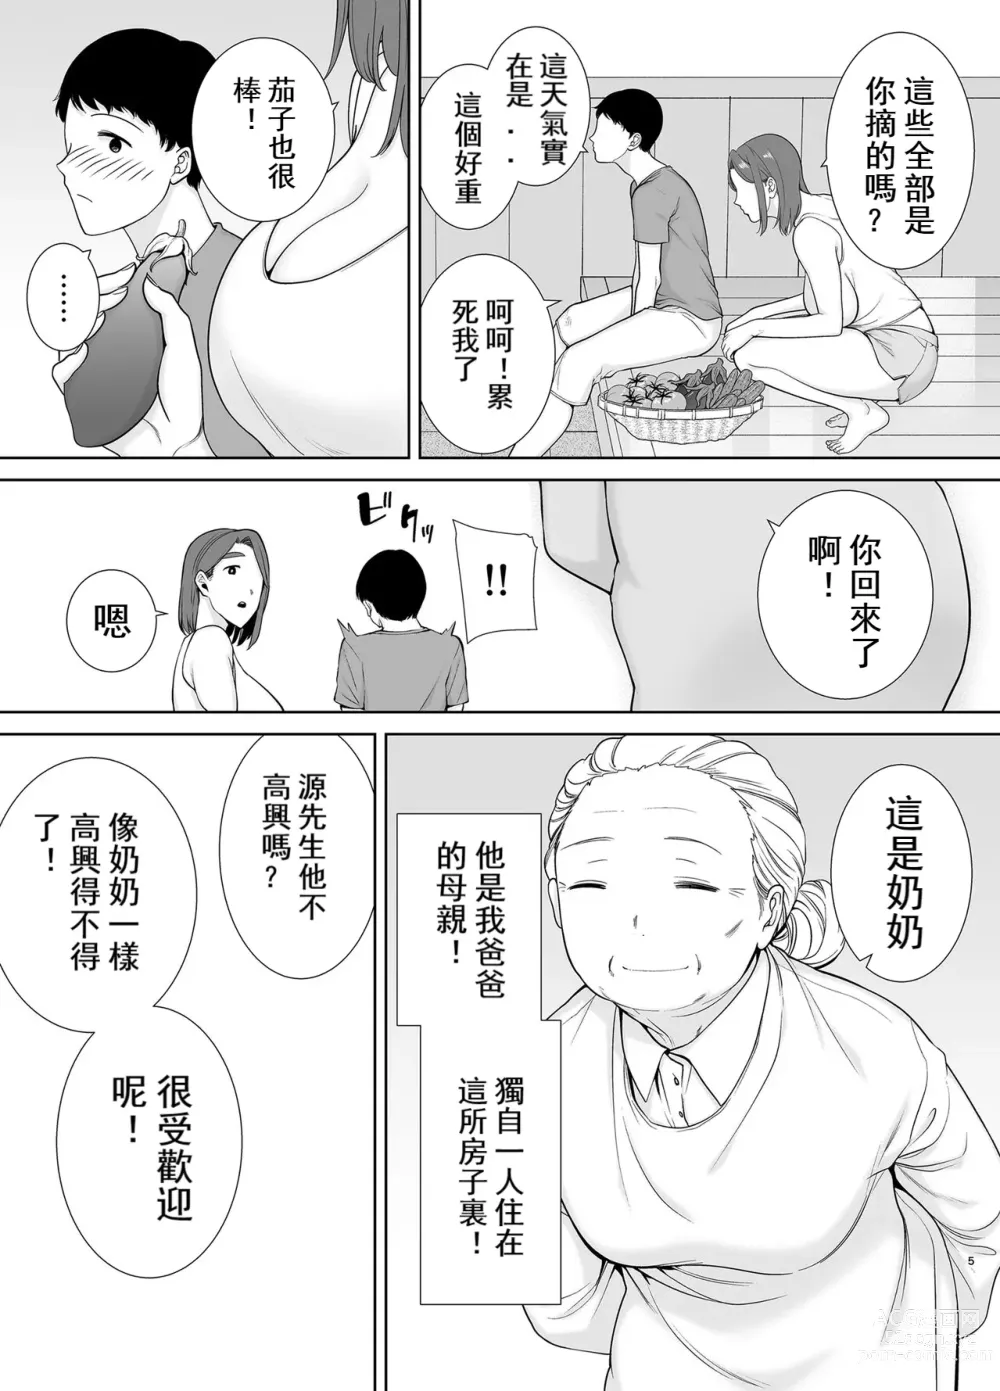 Page 4 of doujinshi 母印堂5